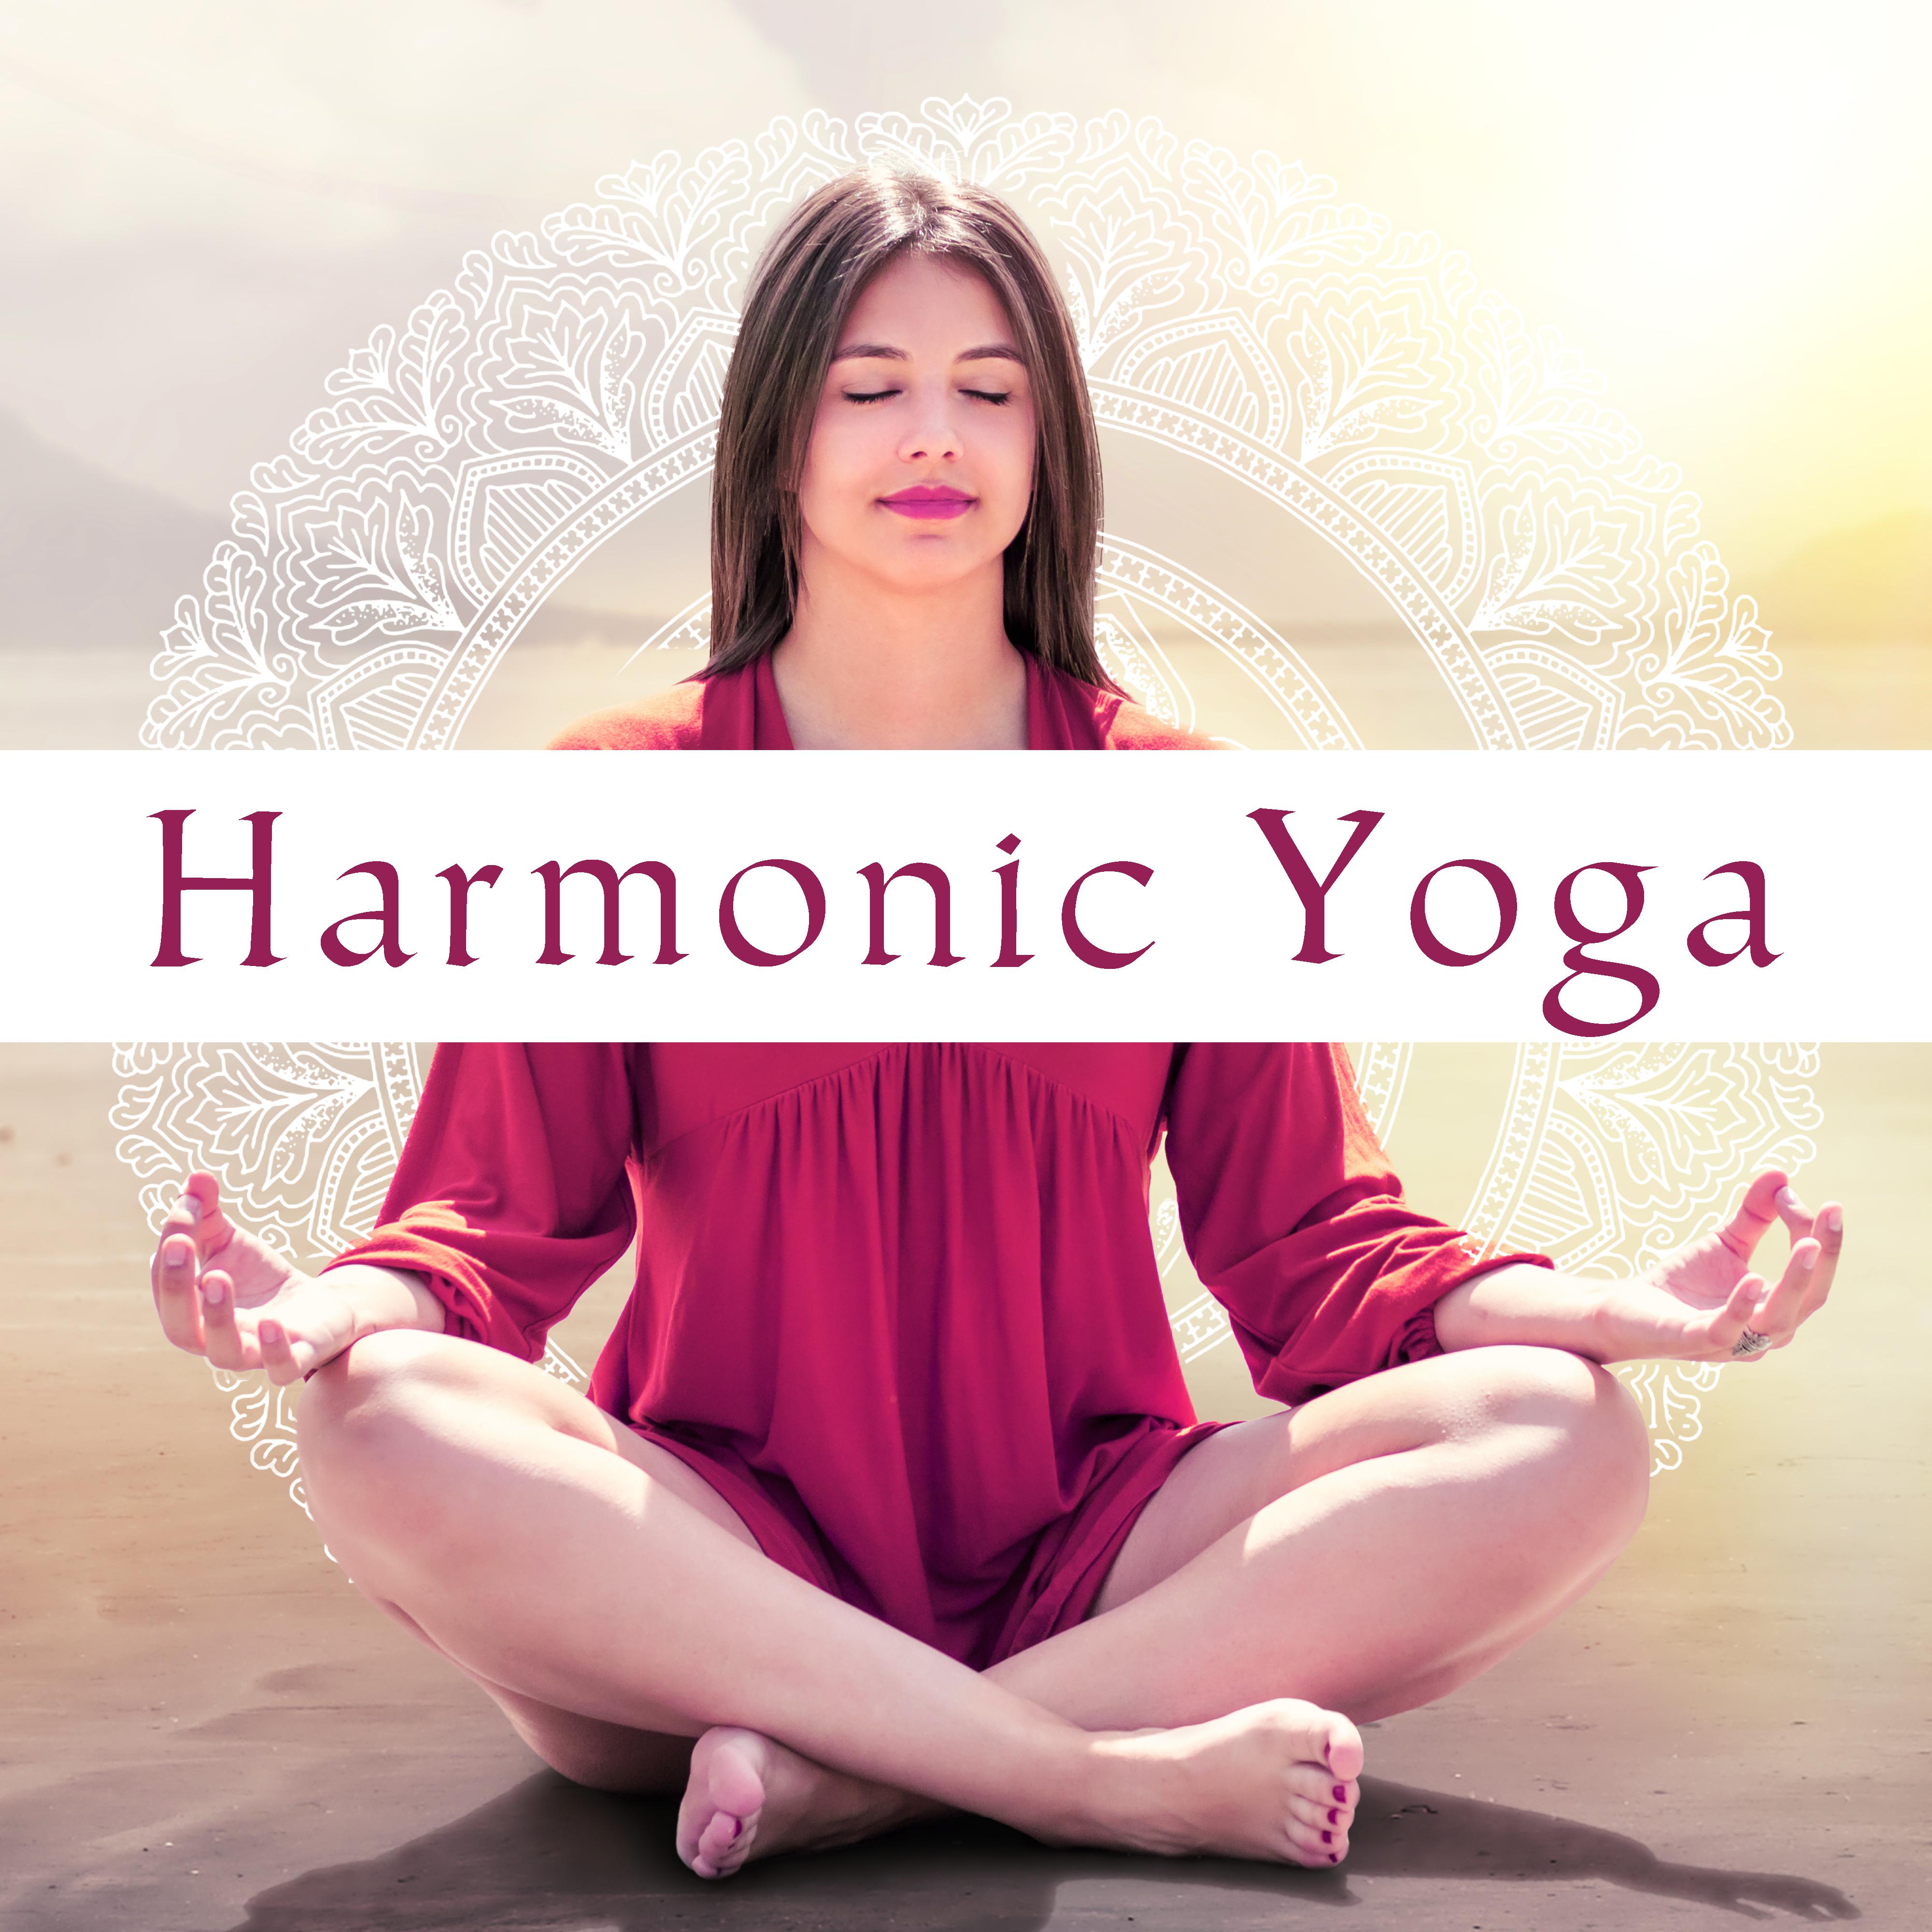 Harmonic Yoga